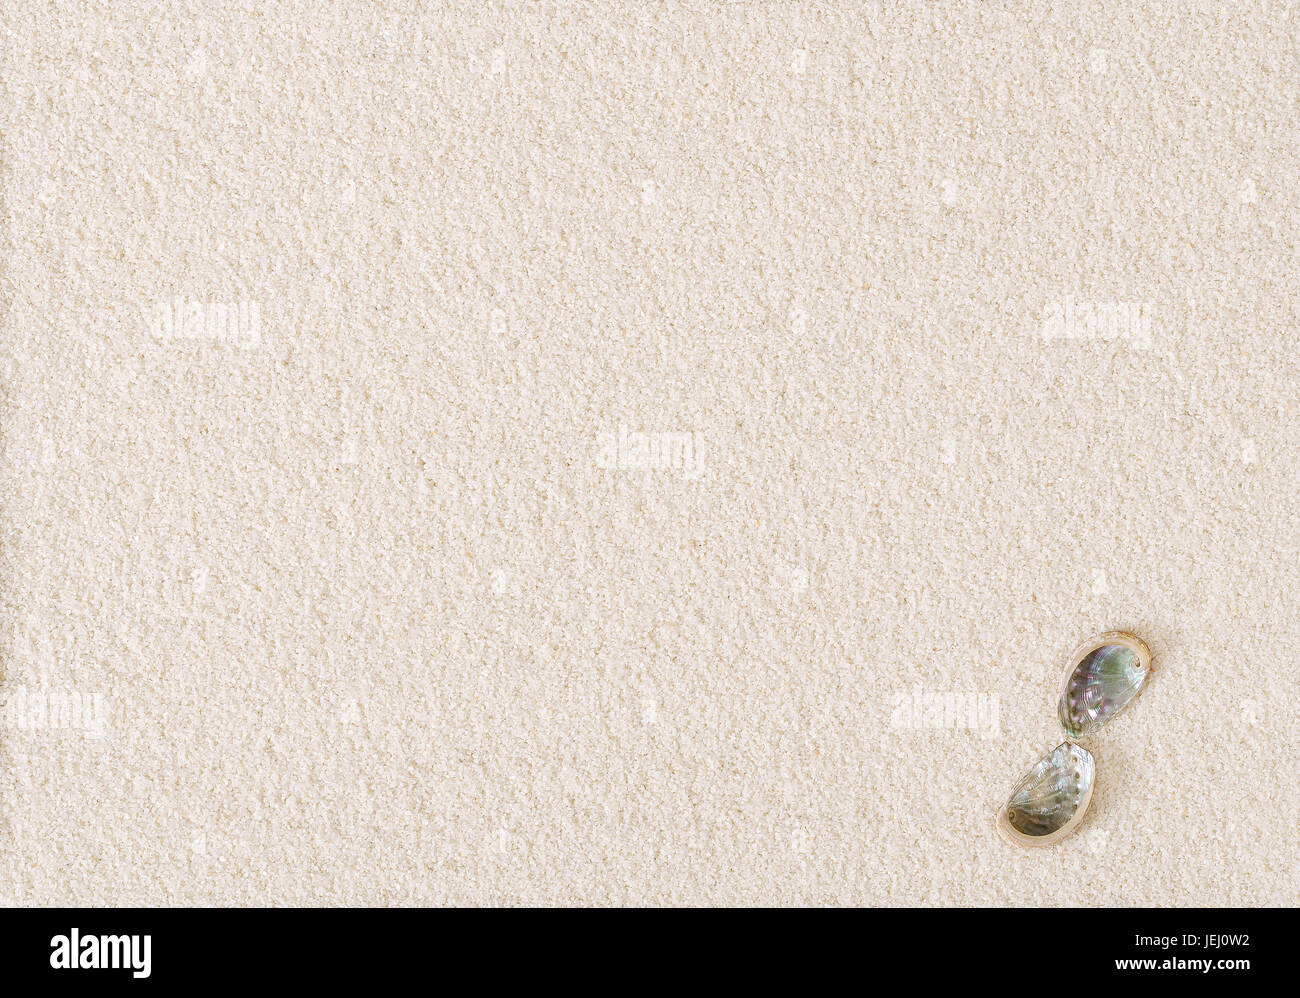 Zwei Abalone-Muscheln auf flache weiße Sandoberfläche. Brüc, Haliotis, eine Meeresschnecke und marine Gastropode Weichtier mit öffnen Spiralstruktur. Stockfoto